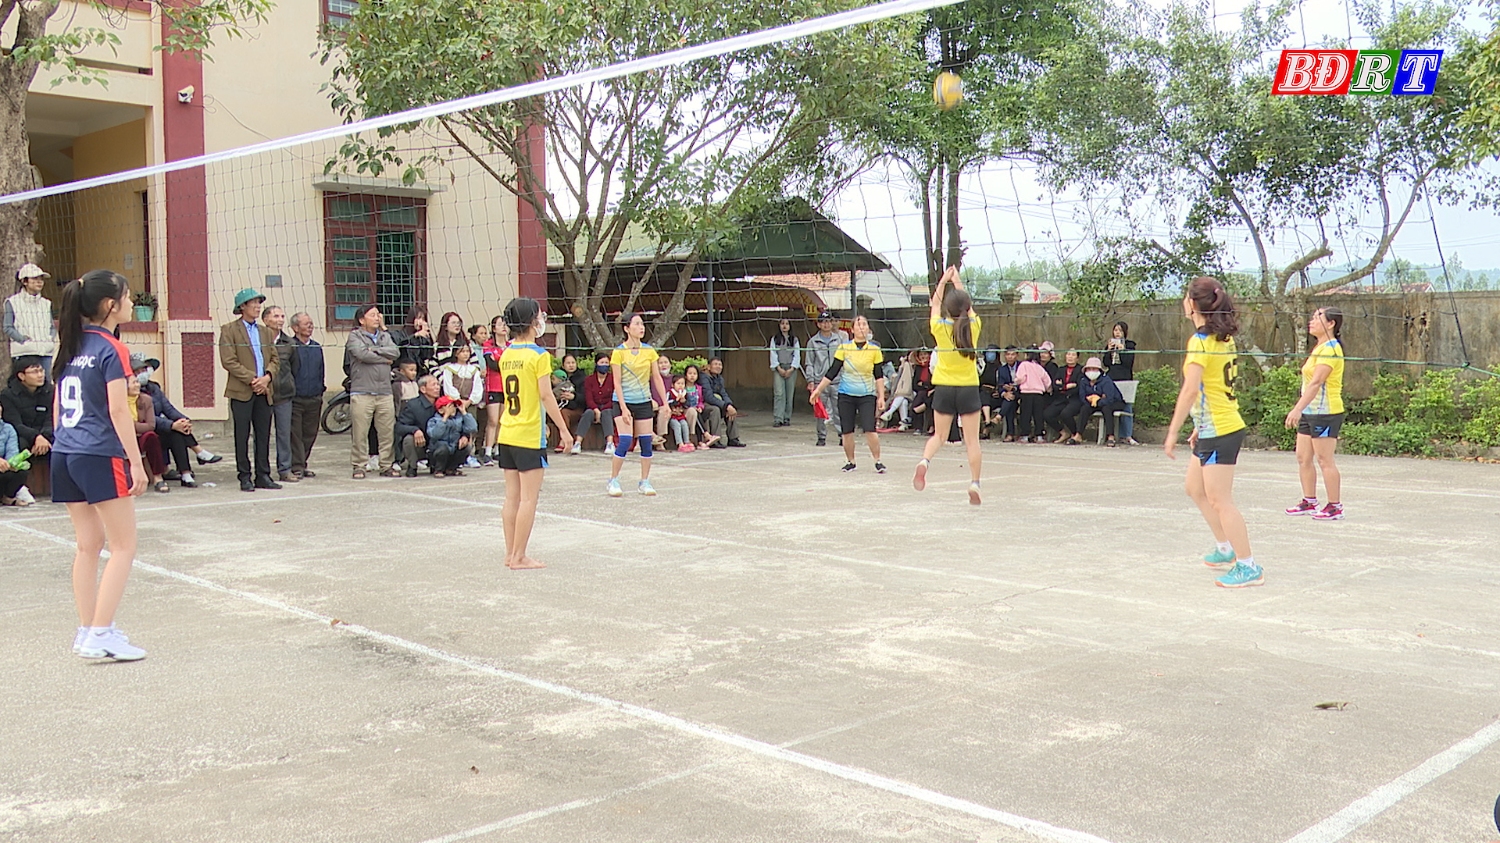 Đây là hoạt động thể dục thể thao được xã Quảng Tiên duy trì hằng năm